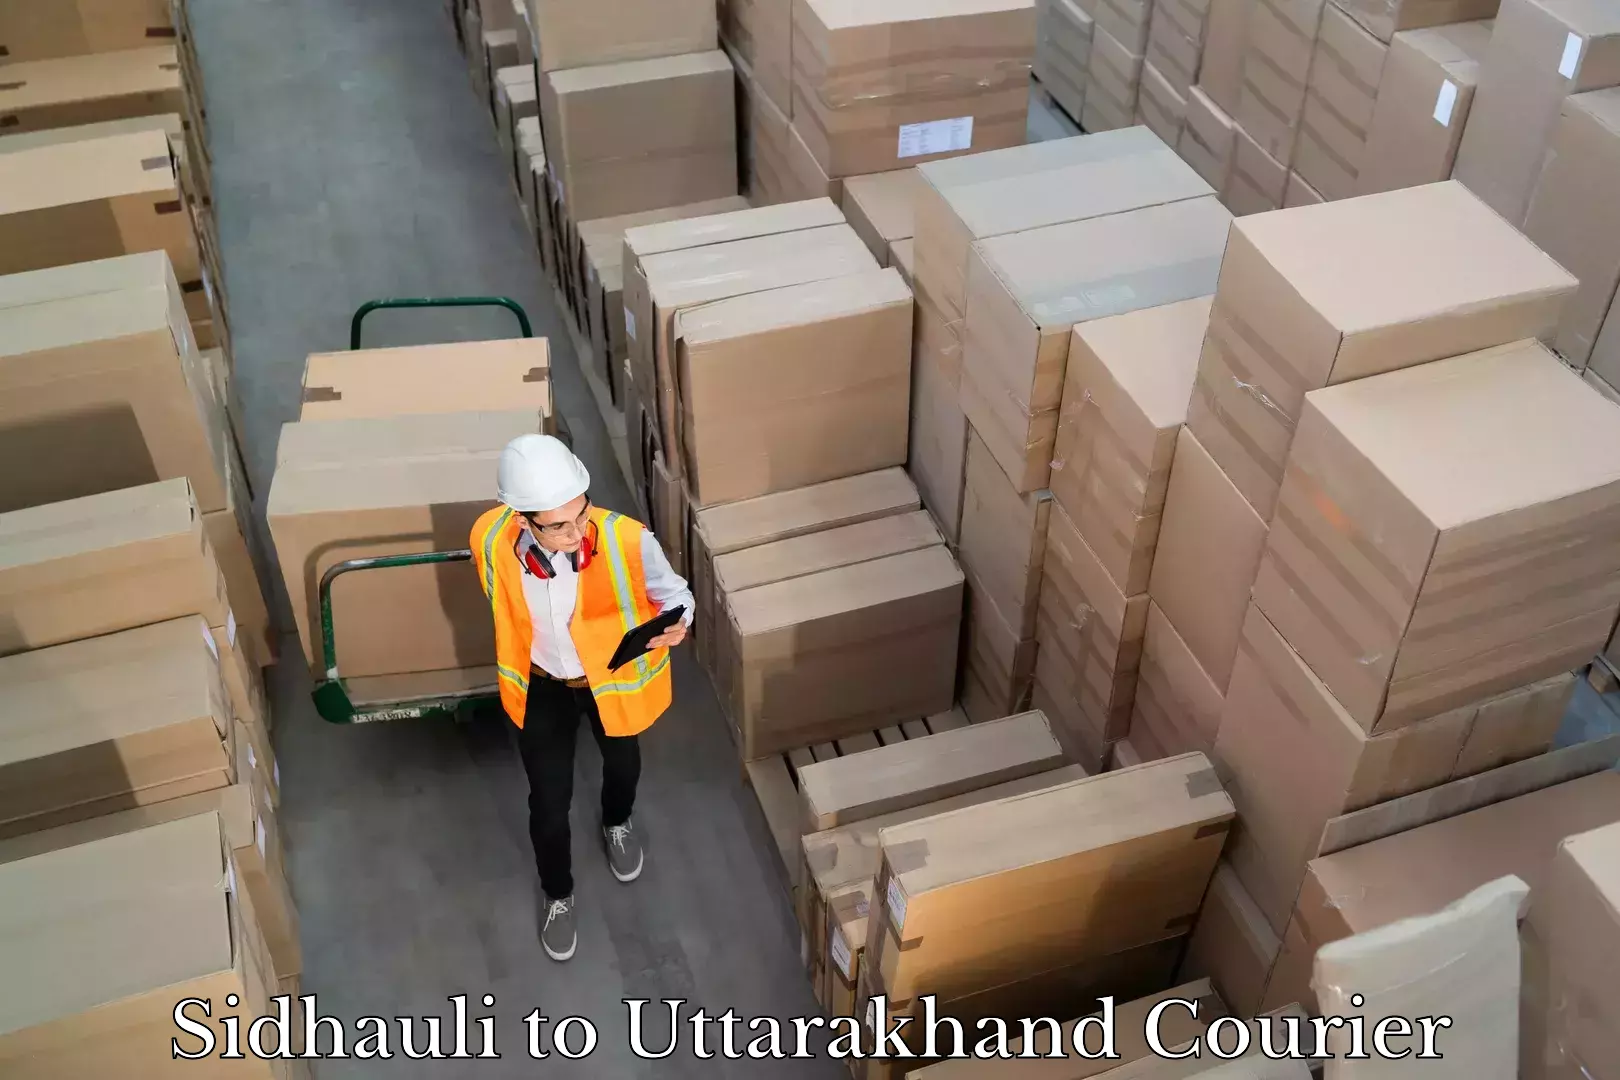 Multi-service courier options Sidhauli to Uttarakhand